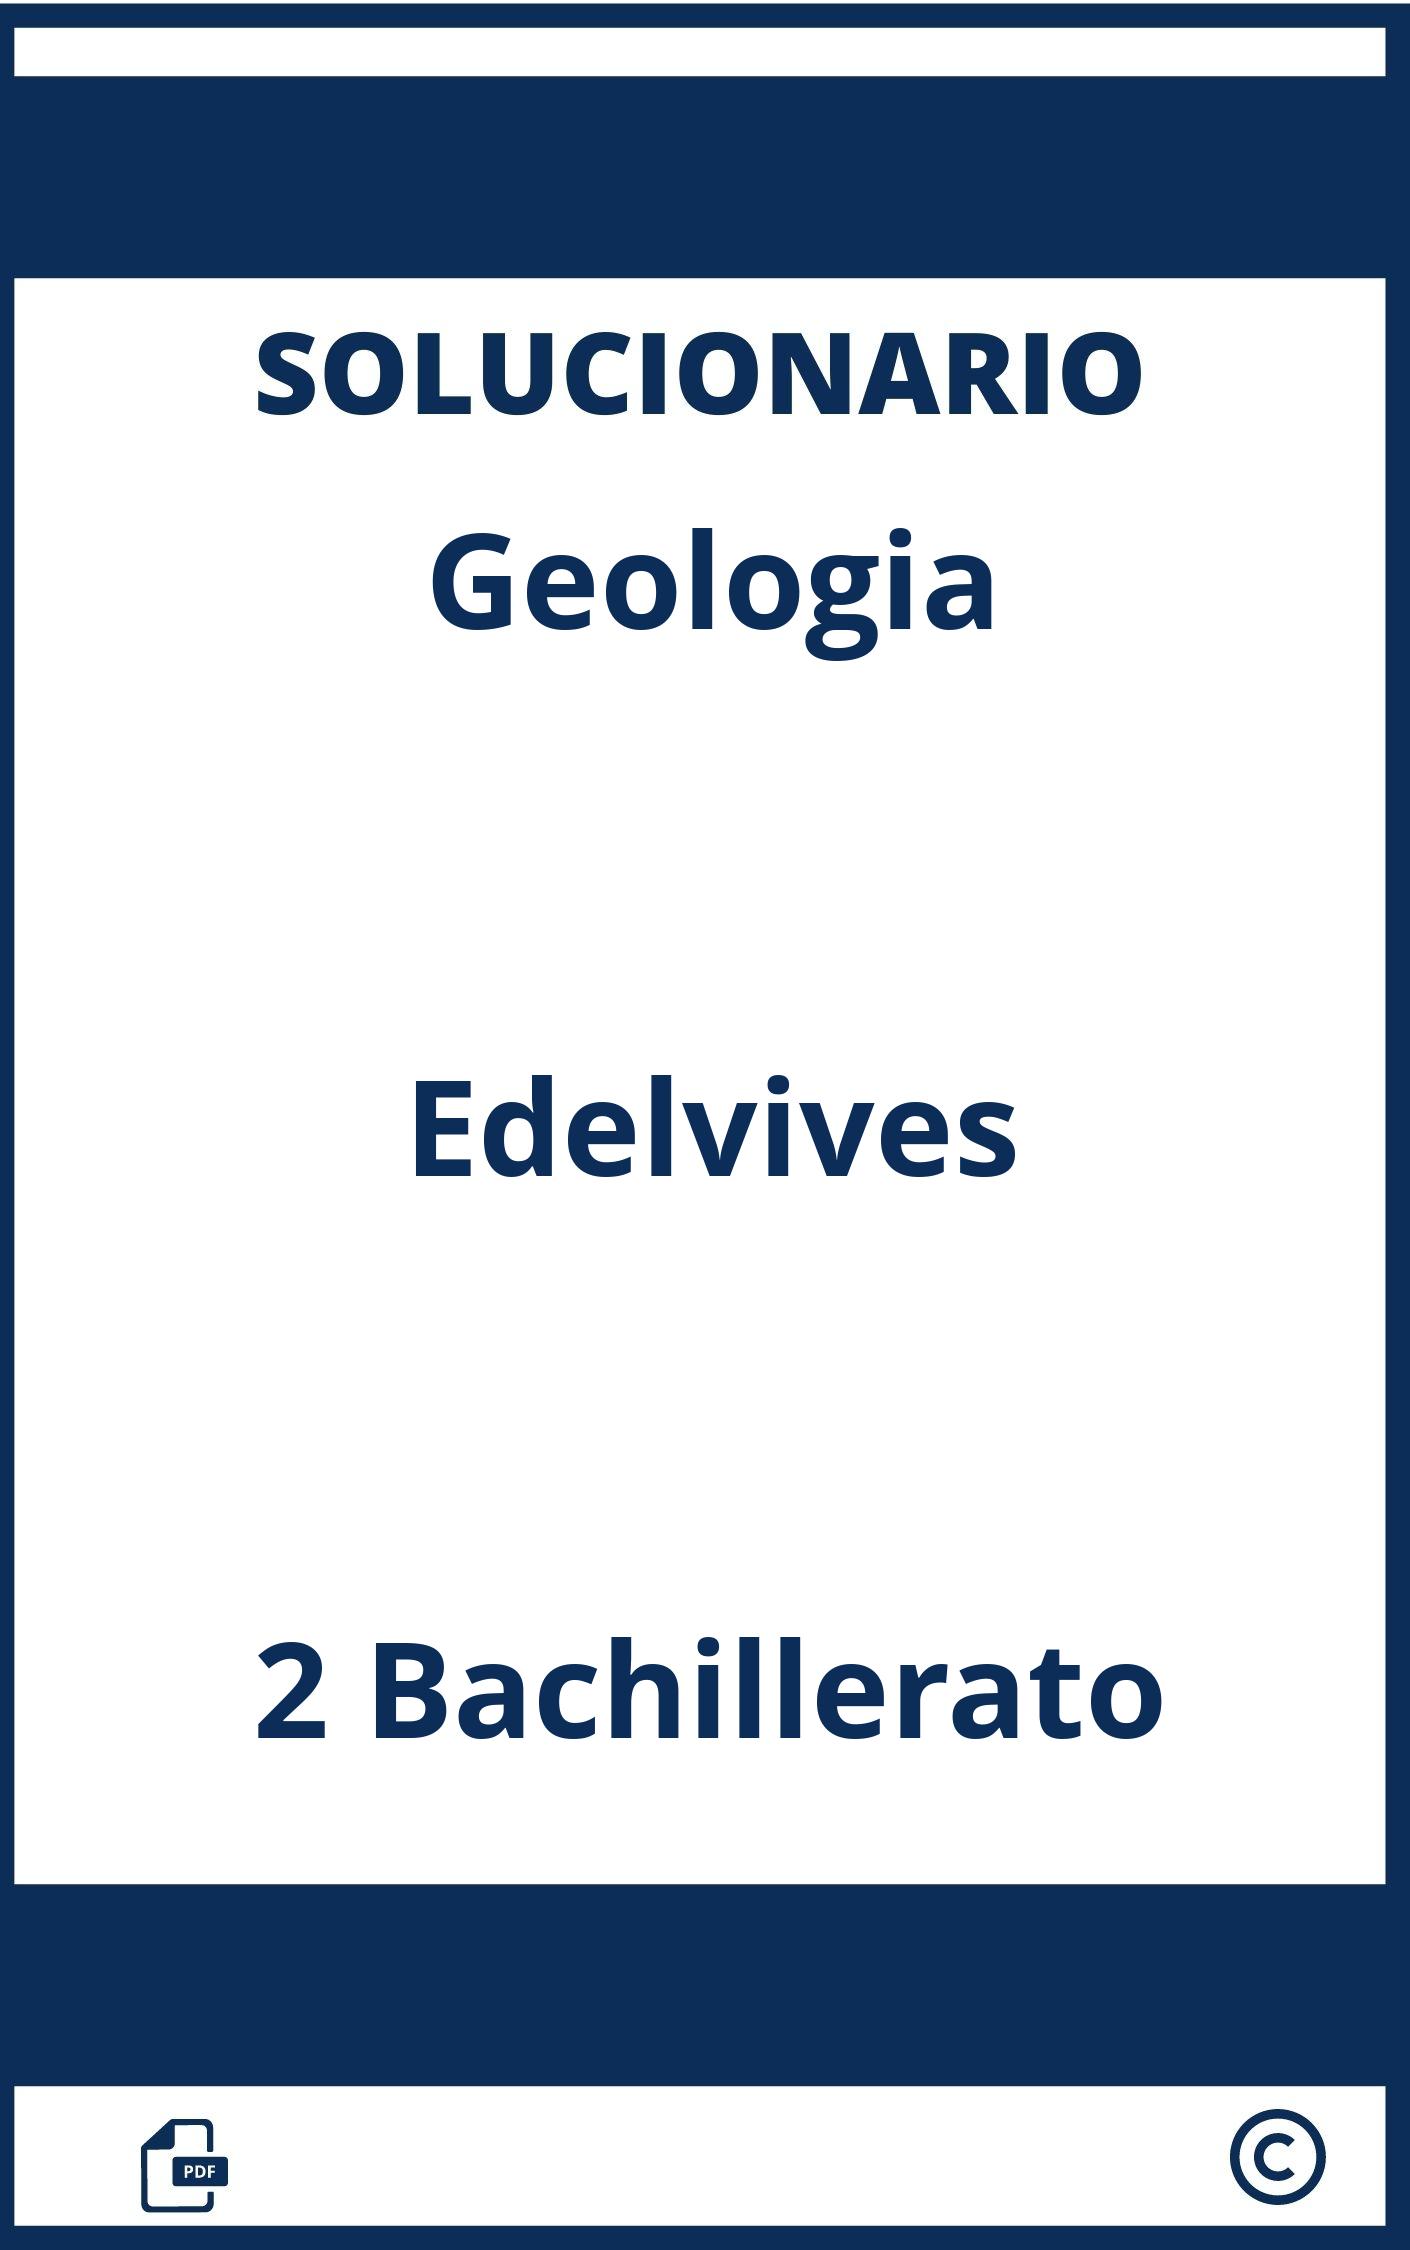 Solucionario Geologia 2 Bachillerato Edelvives